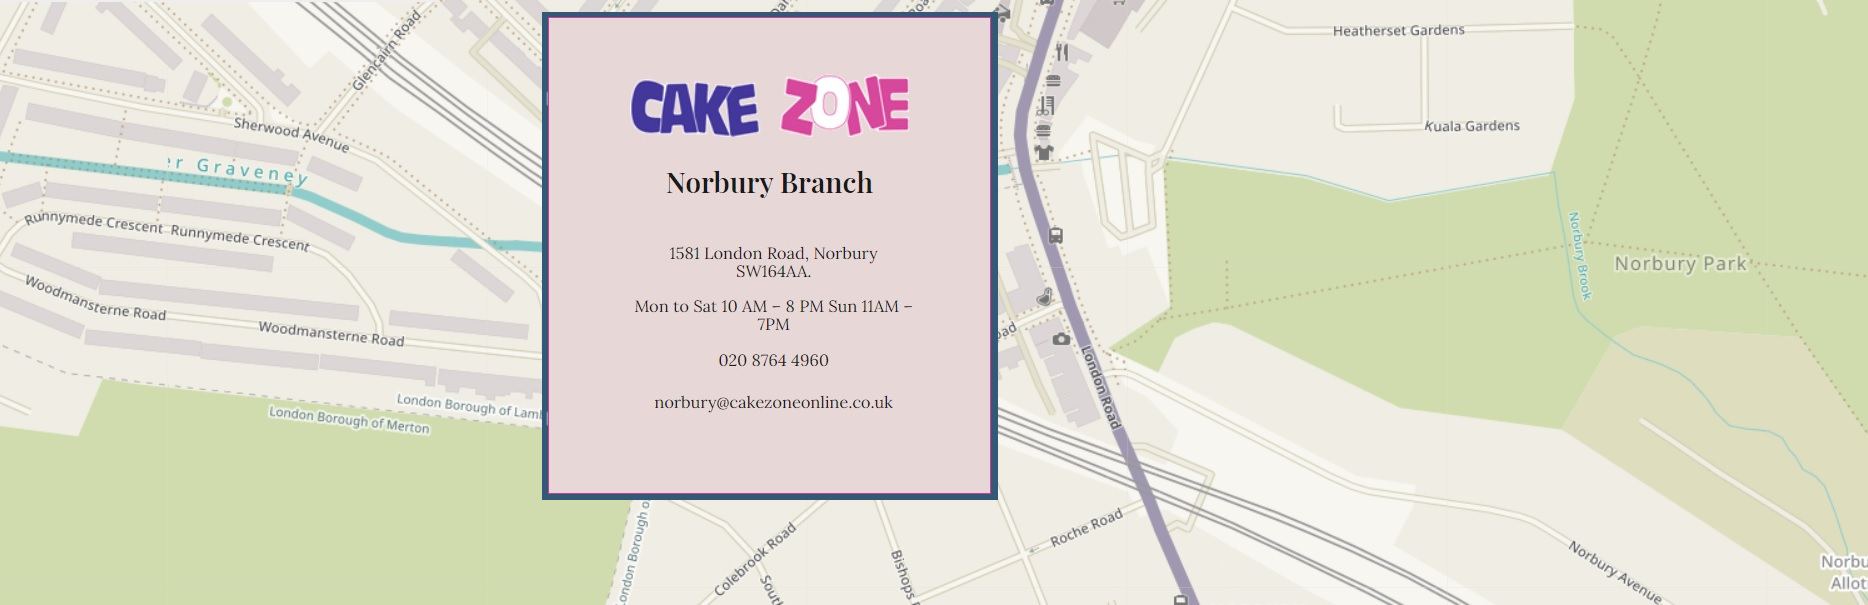 https://cakezoneonline.co.uk/wp-content/uploads/2021/10/Norbury_Map.jpg